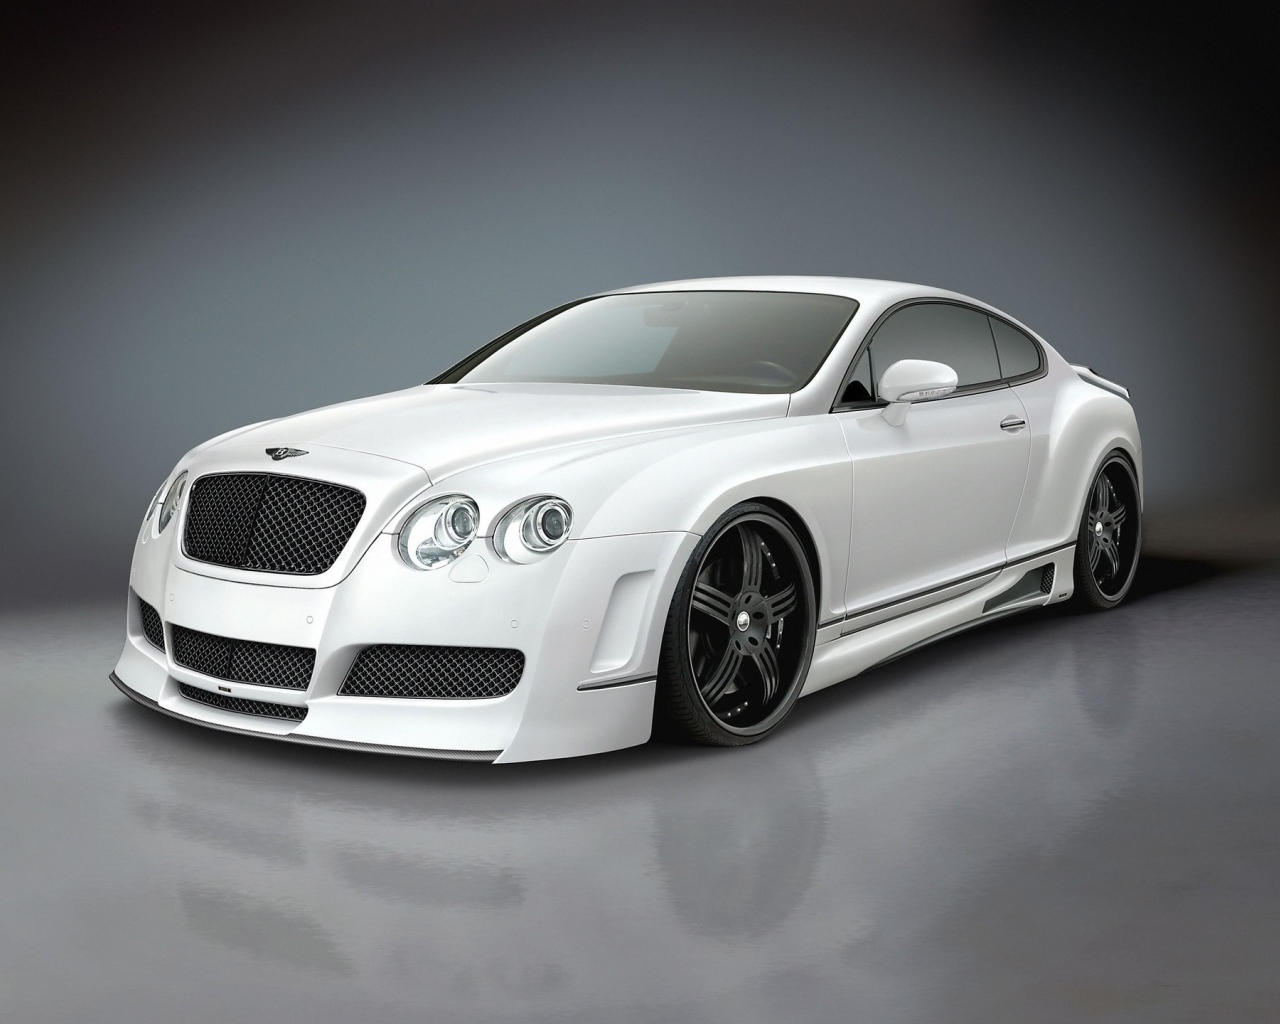 Expensive white car Bentley